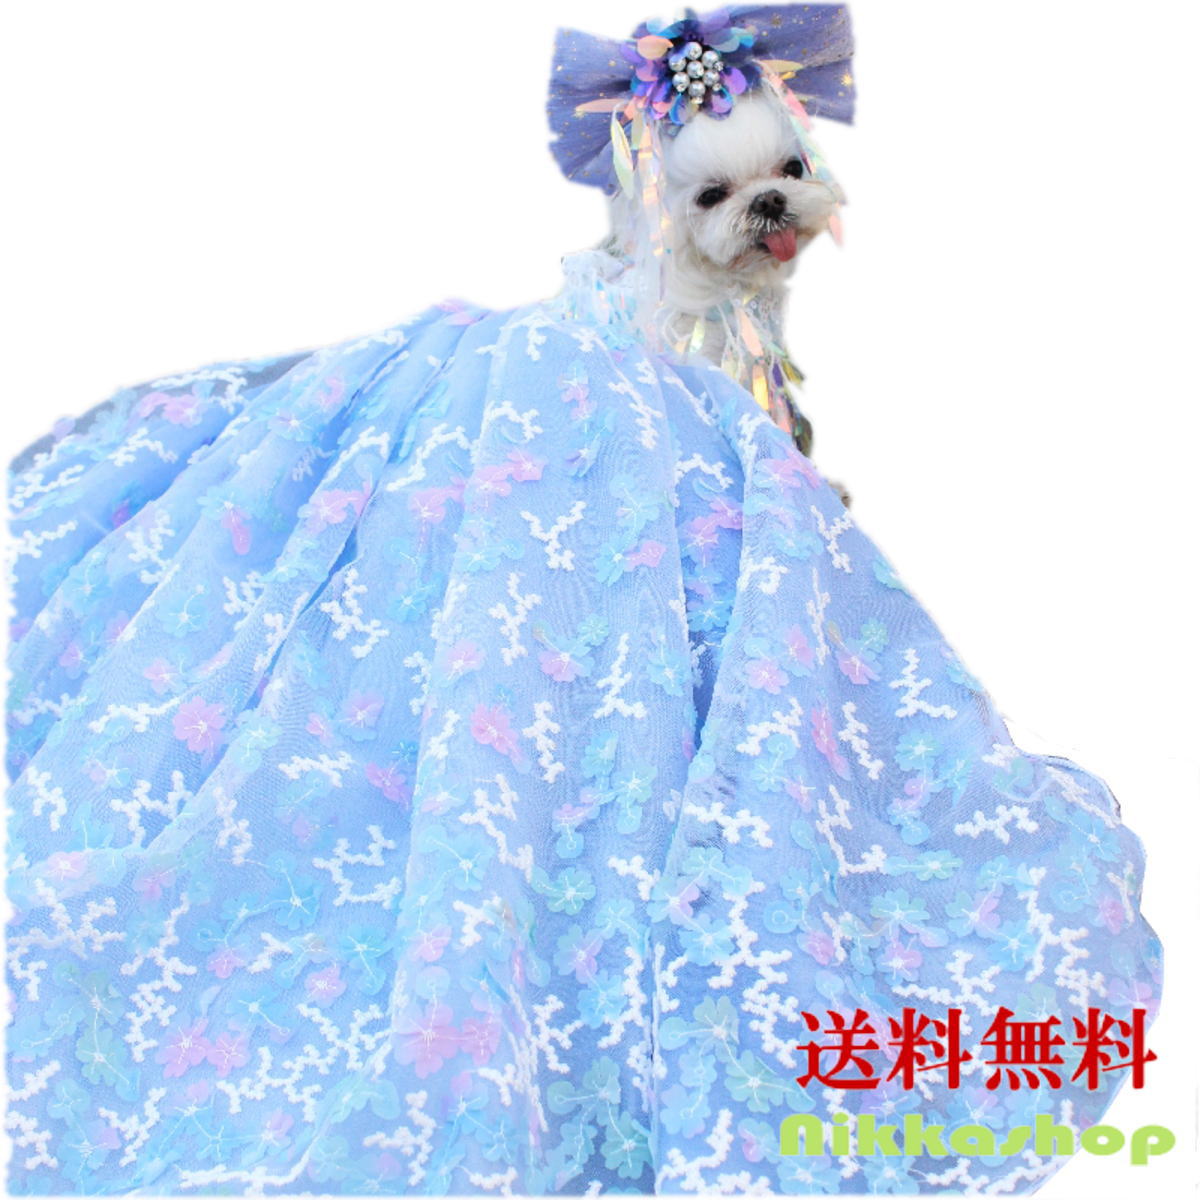 【楽天市場】犬 服 ドレス 春夏 犬服 犬の服 ウェディングドレス 手作り 豪華 上品 プリンセスライン ブルー Sサイズ パーティードレス